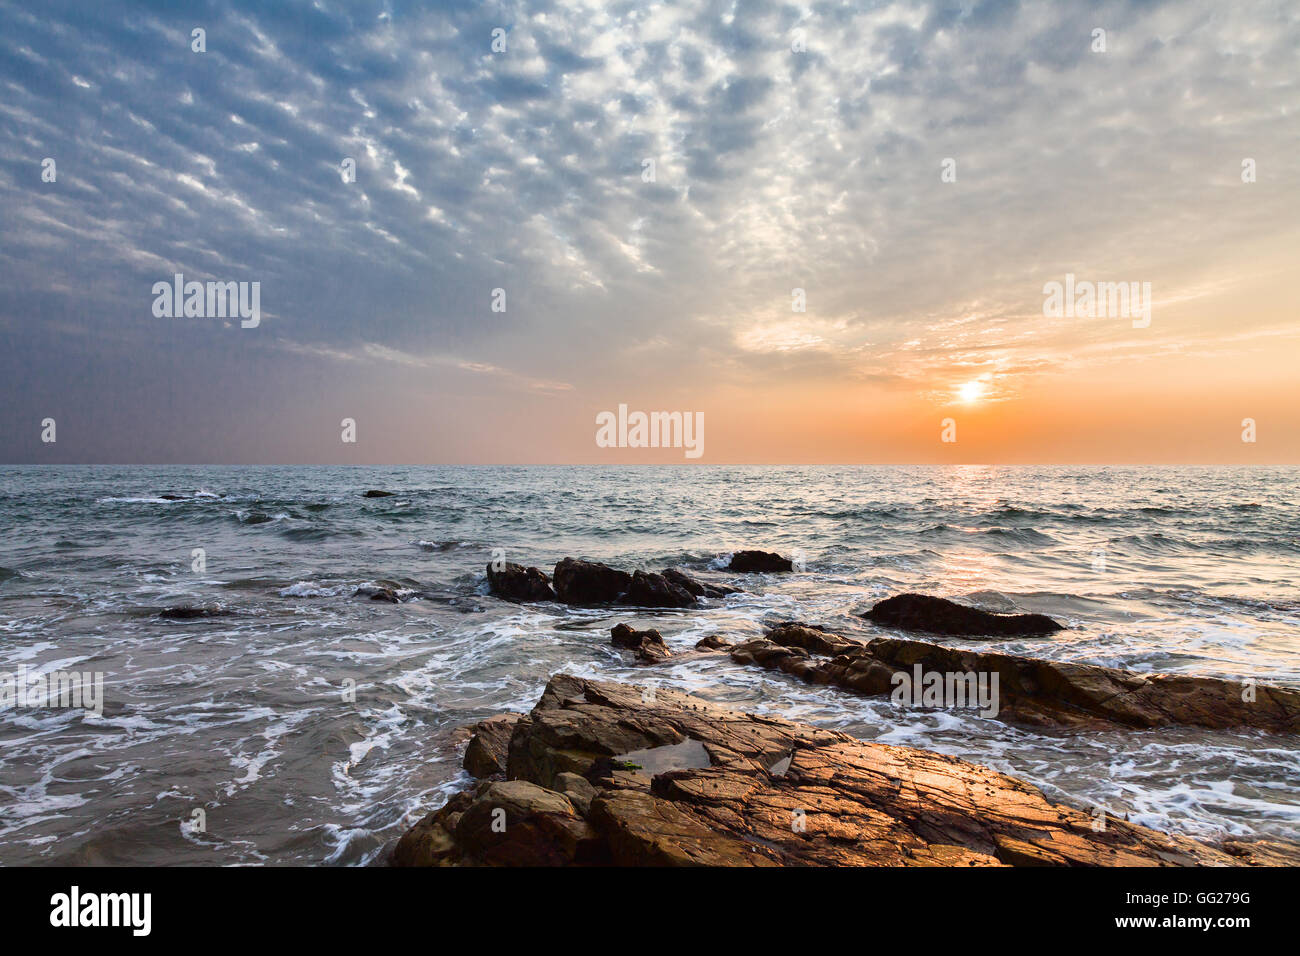 Sunset over arabian sea. India. State Goa Stock Photo